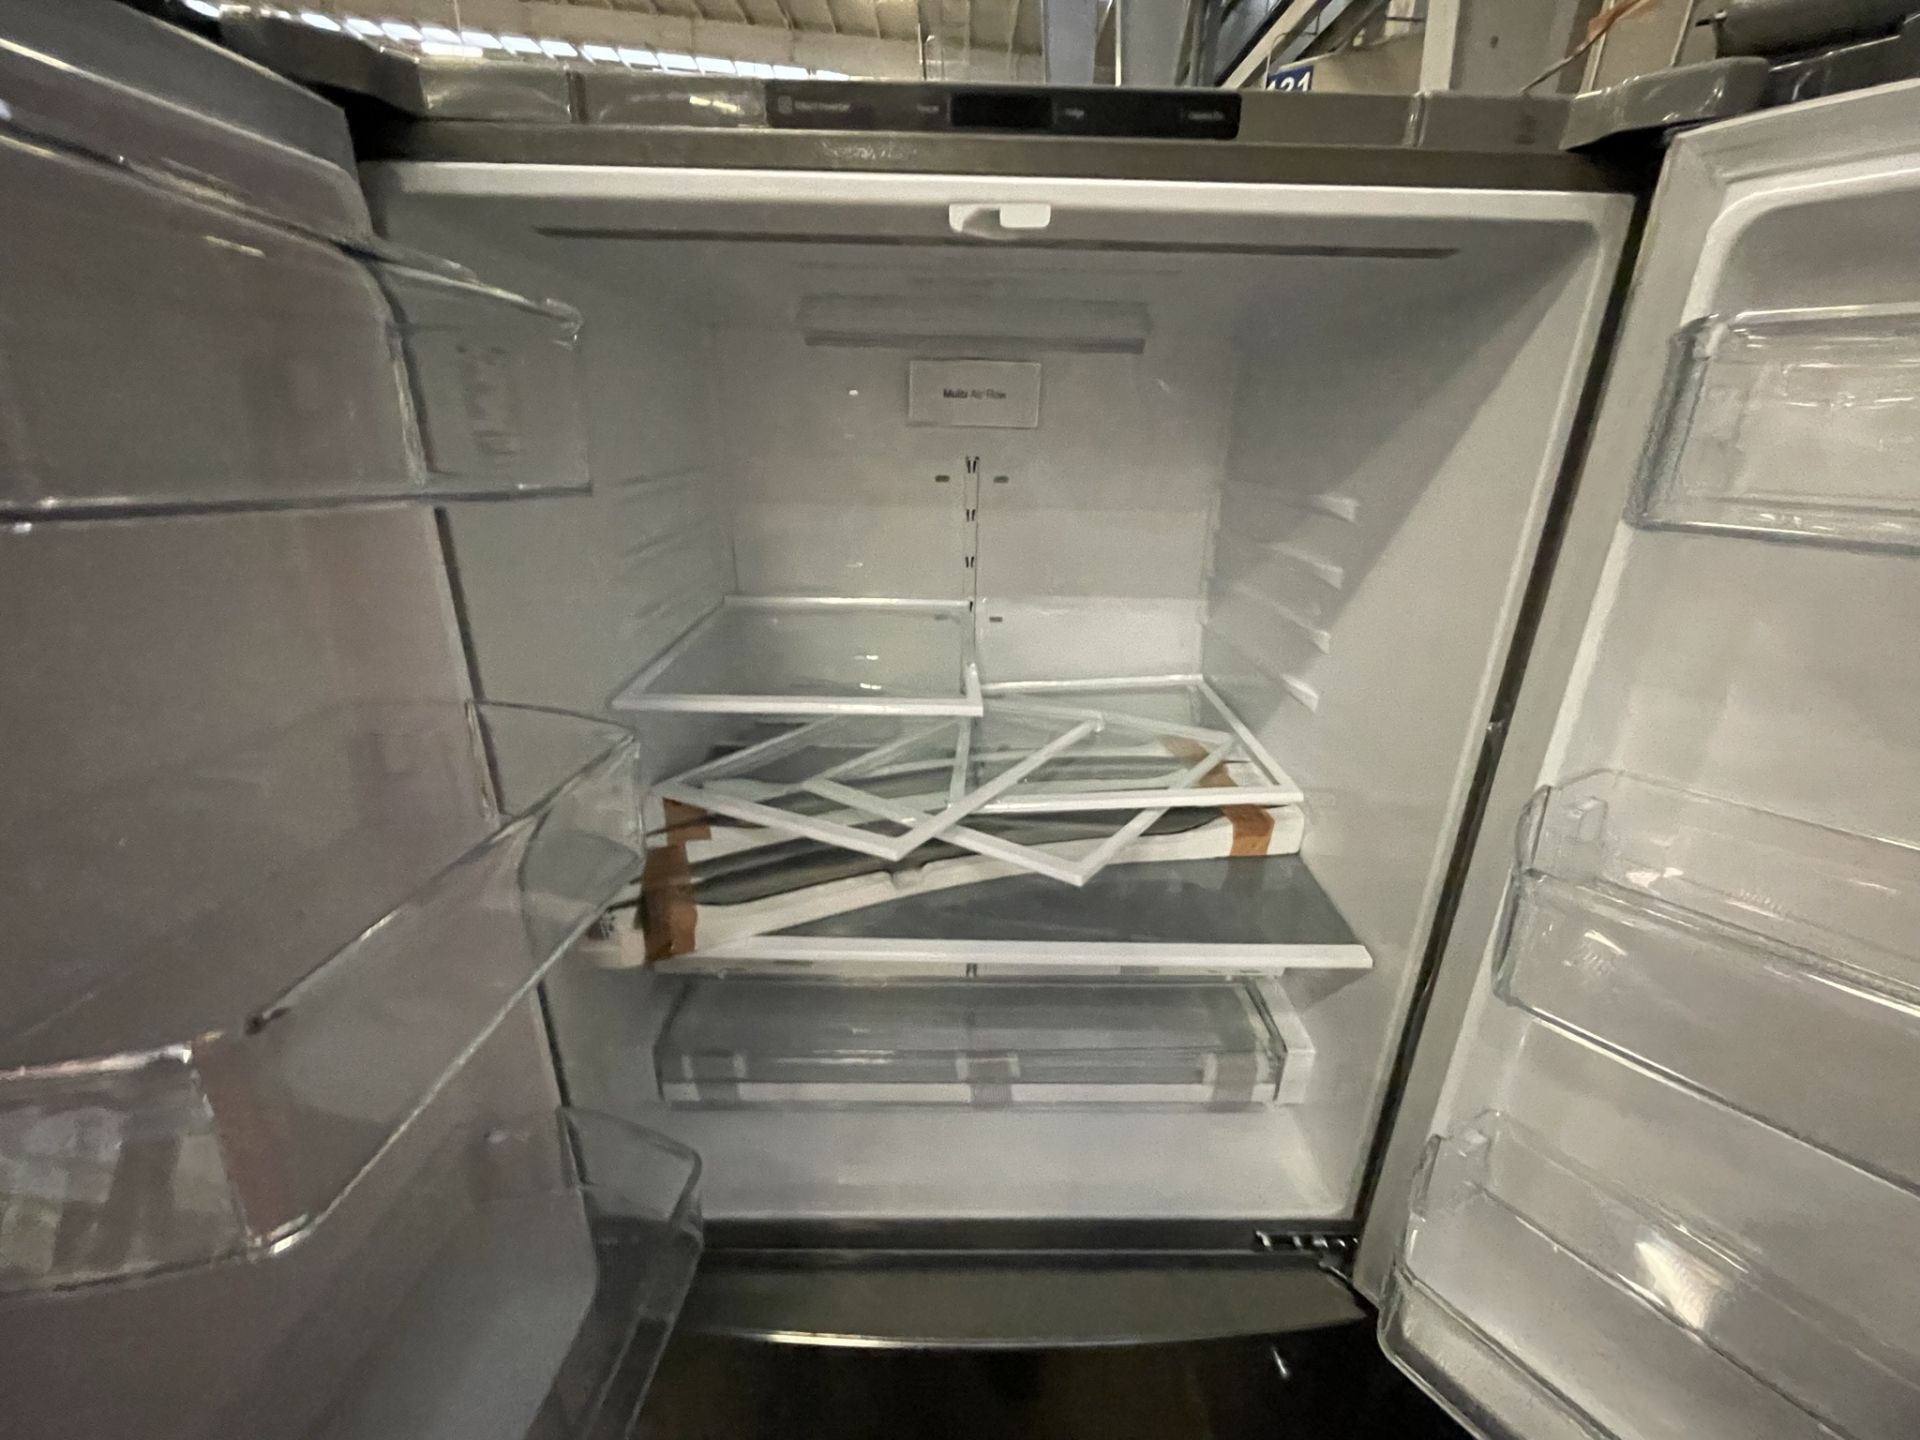 (EQUIPO NUEVO) 1 Refrigerador Marca LG, Modelo GM29BP, Serie B2N191, Color Gris, LB-625577 (Nuevo, - Image 7 of 8